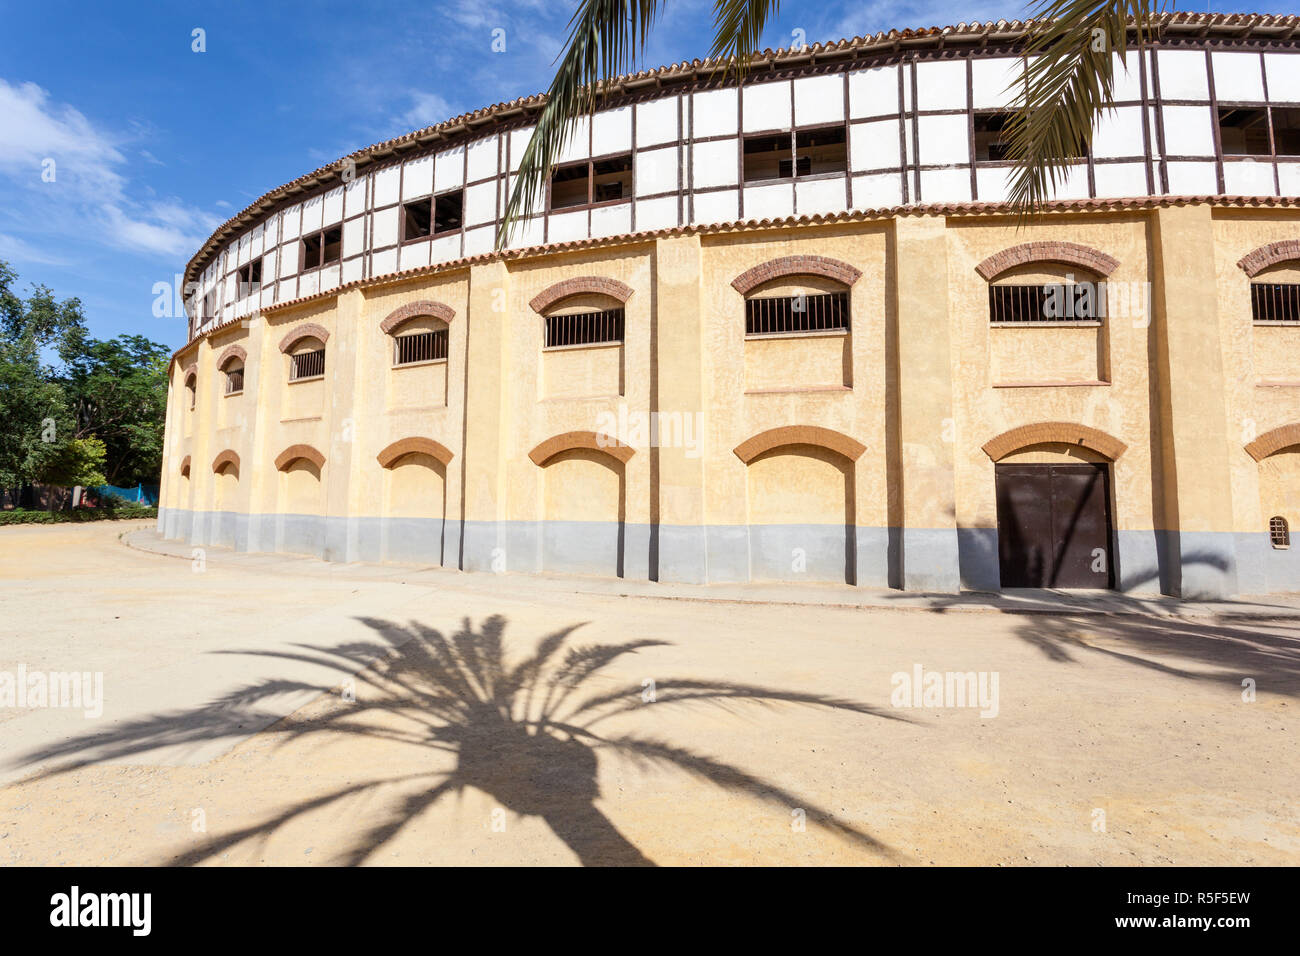 Plaza de toros en Lorca, provincia de Murcia, España Foto de stock